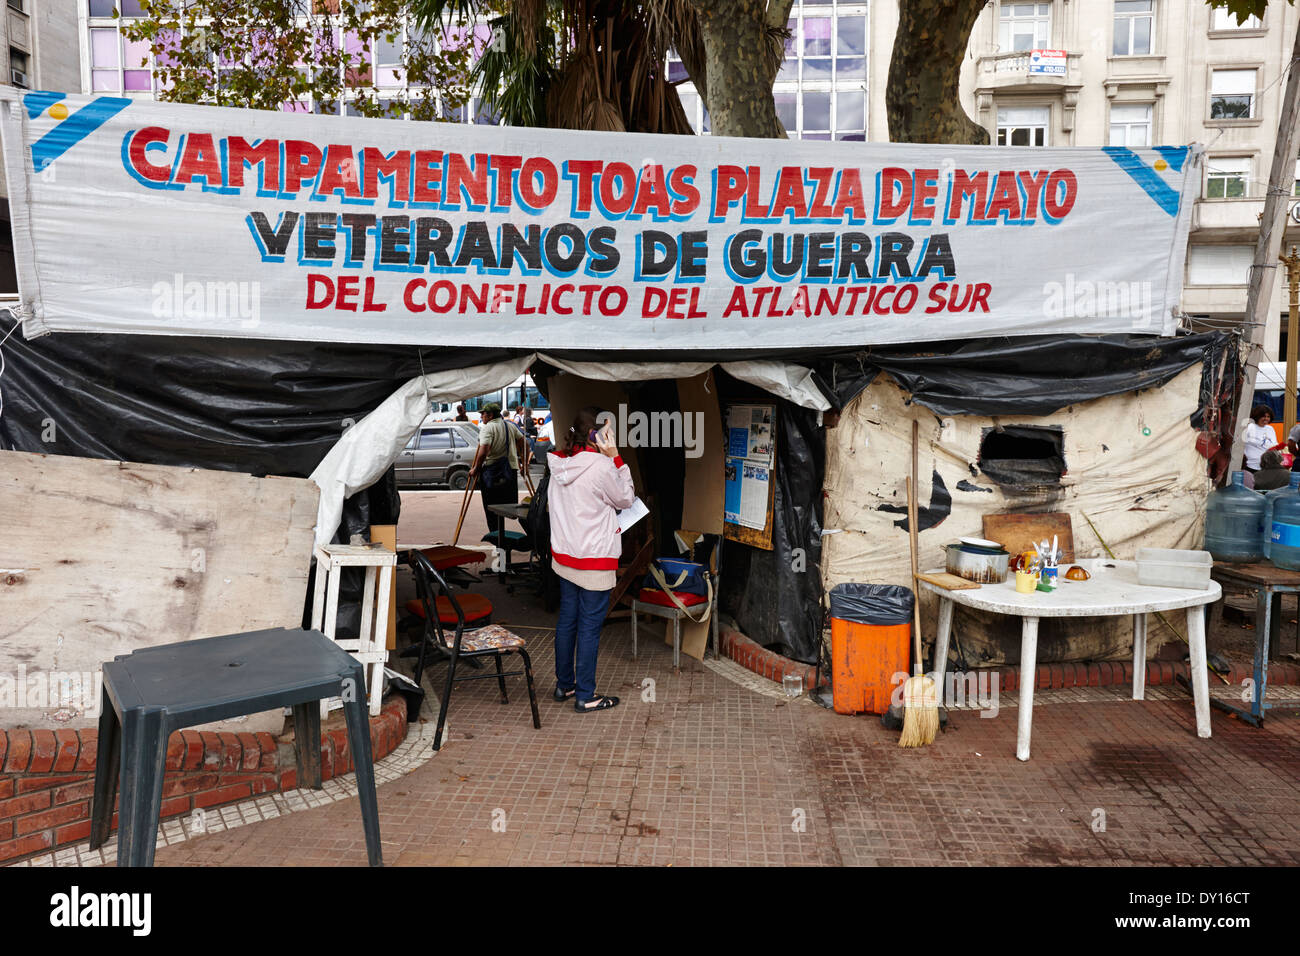 Islas Malvinas veteranos campamento de protesta plaza de mayo buenos aires argentina Foto de stock